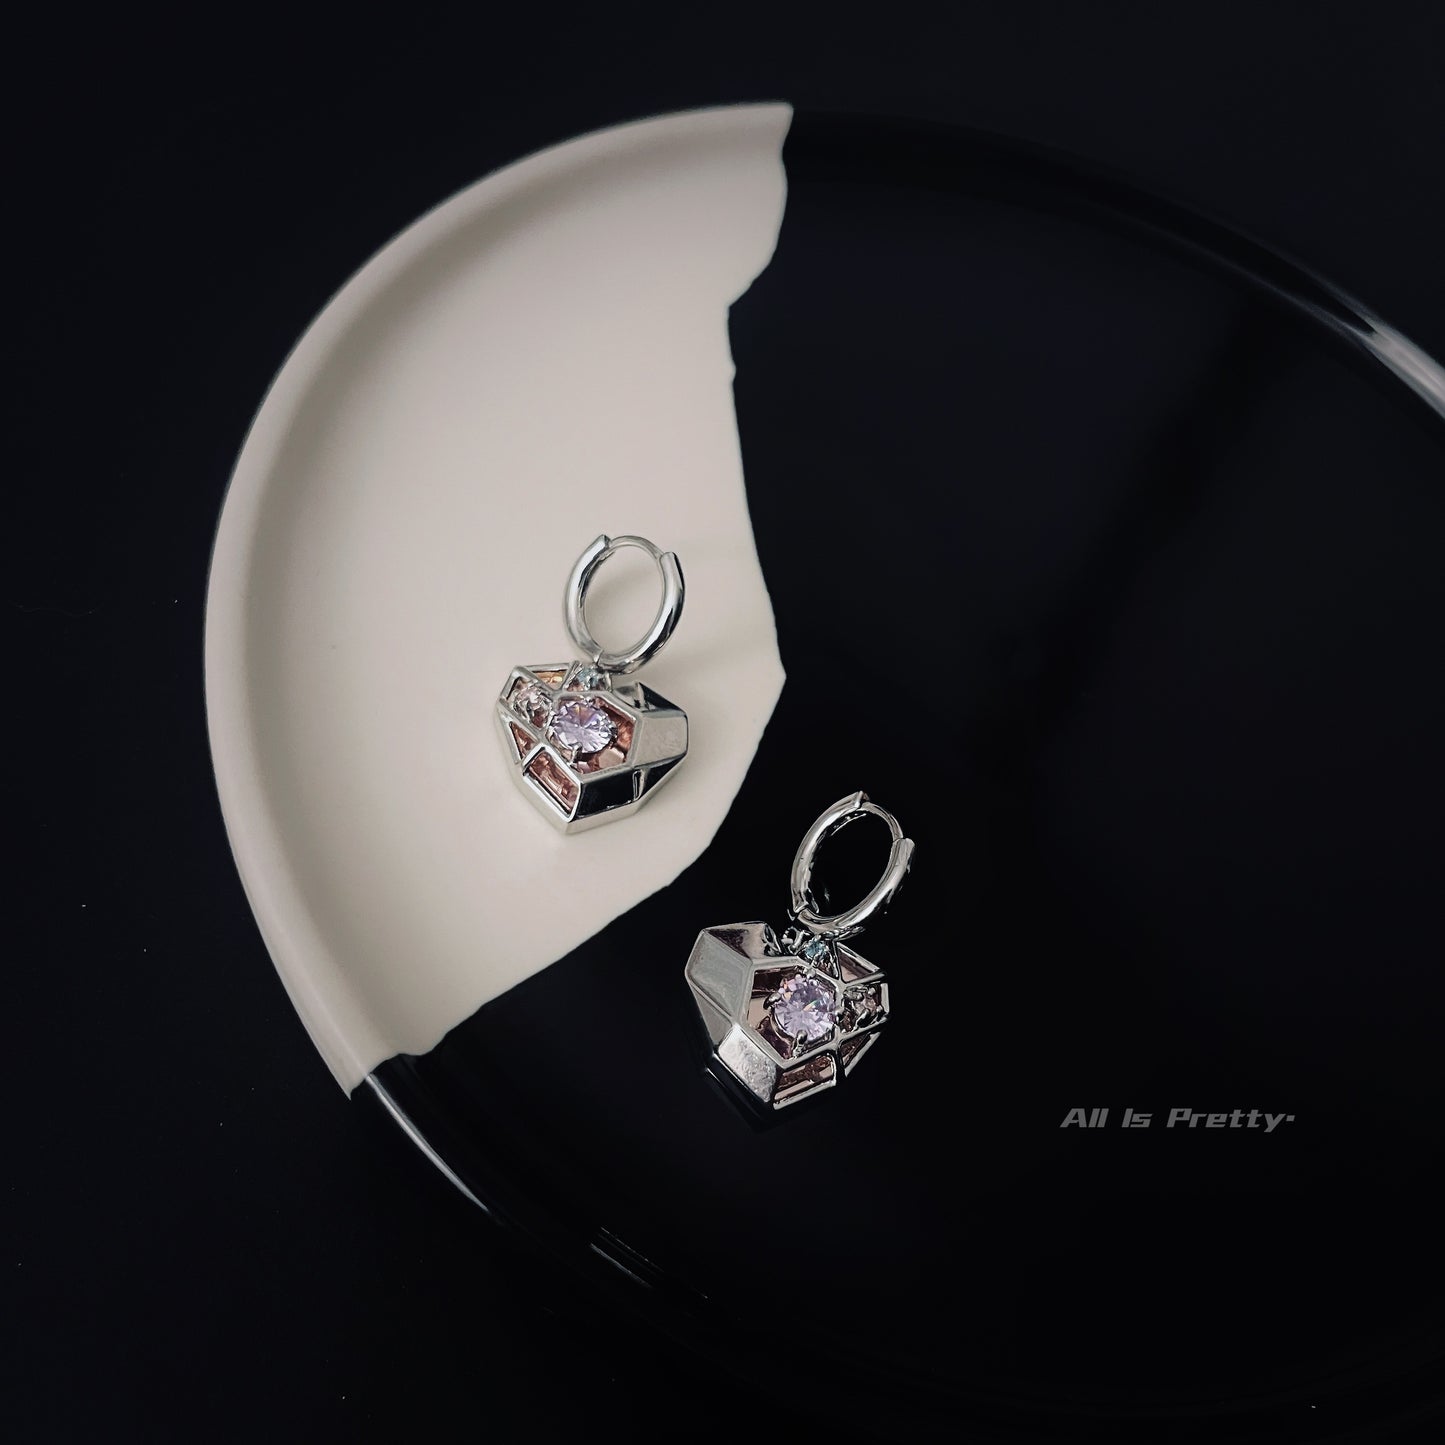 Geometry mirror heart earrings